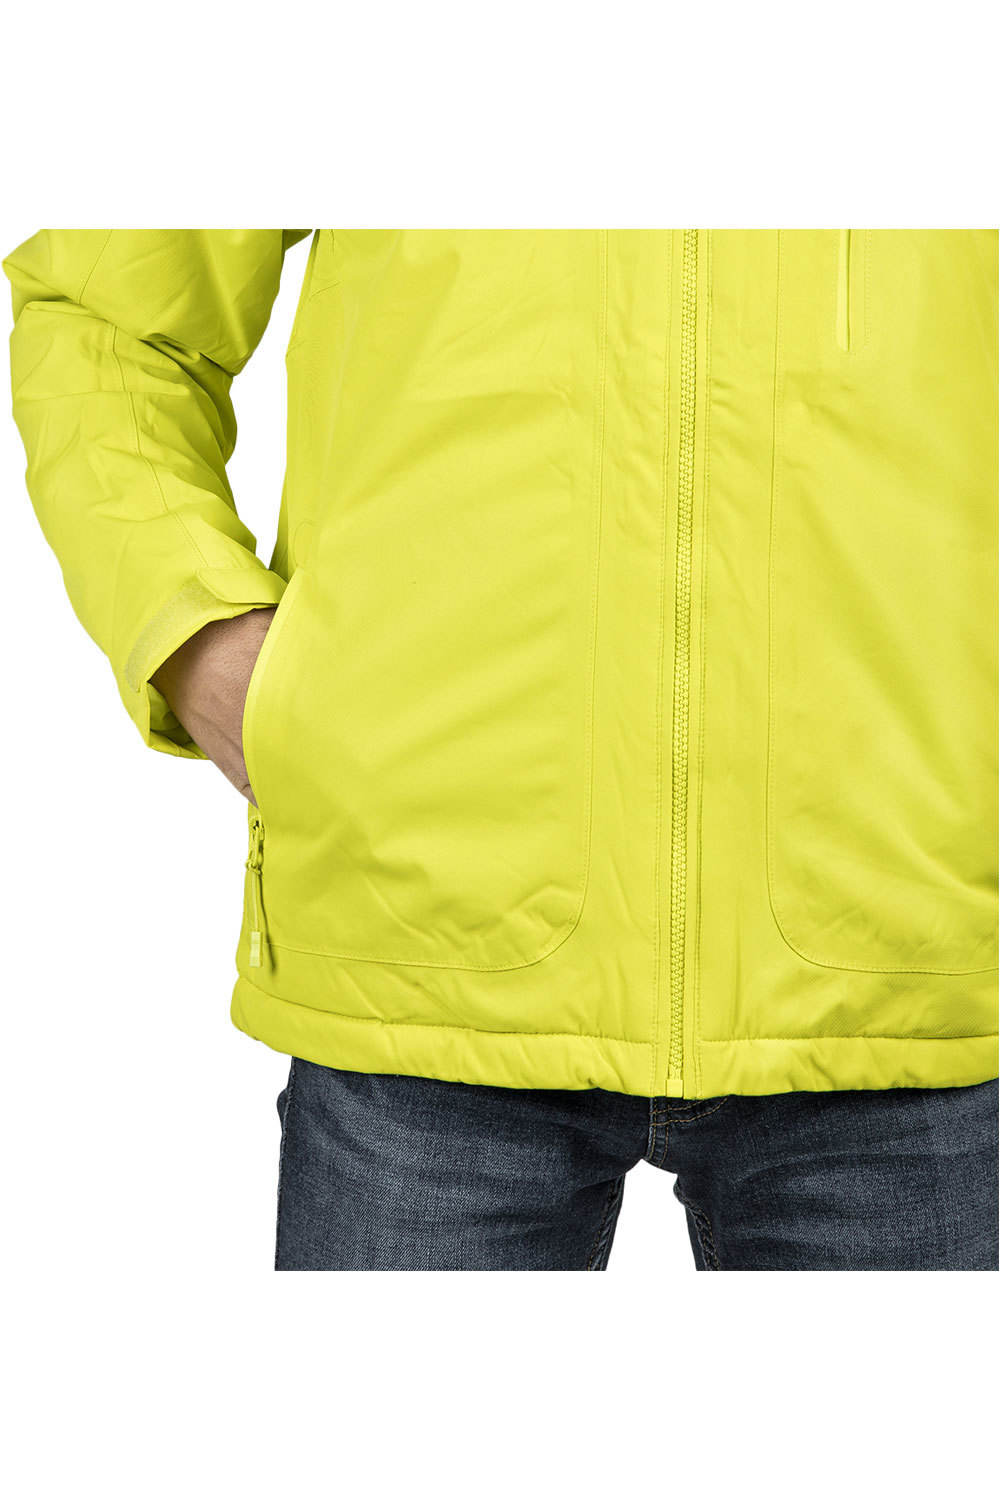 Izas chaqueta outdoor hombre LOGAN M 03